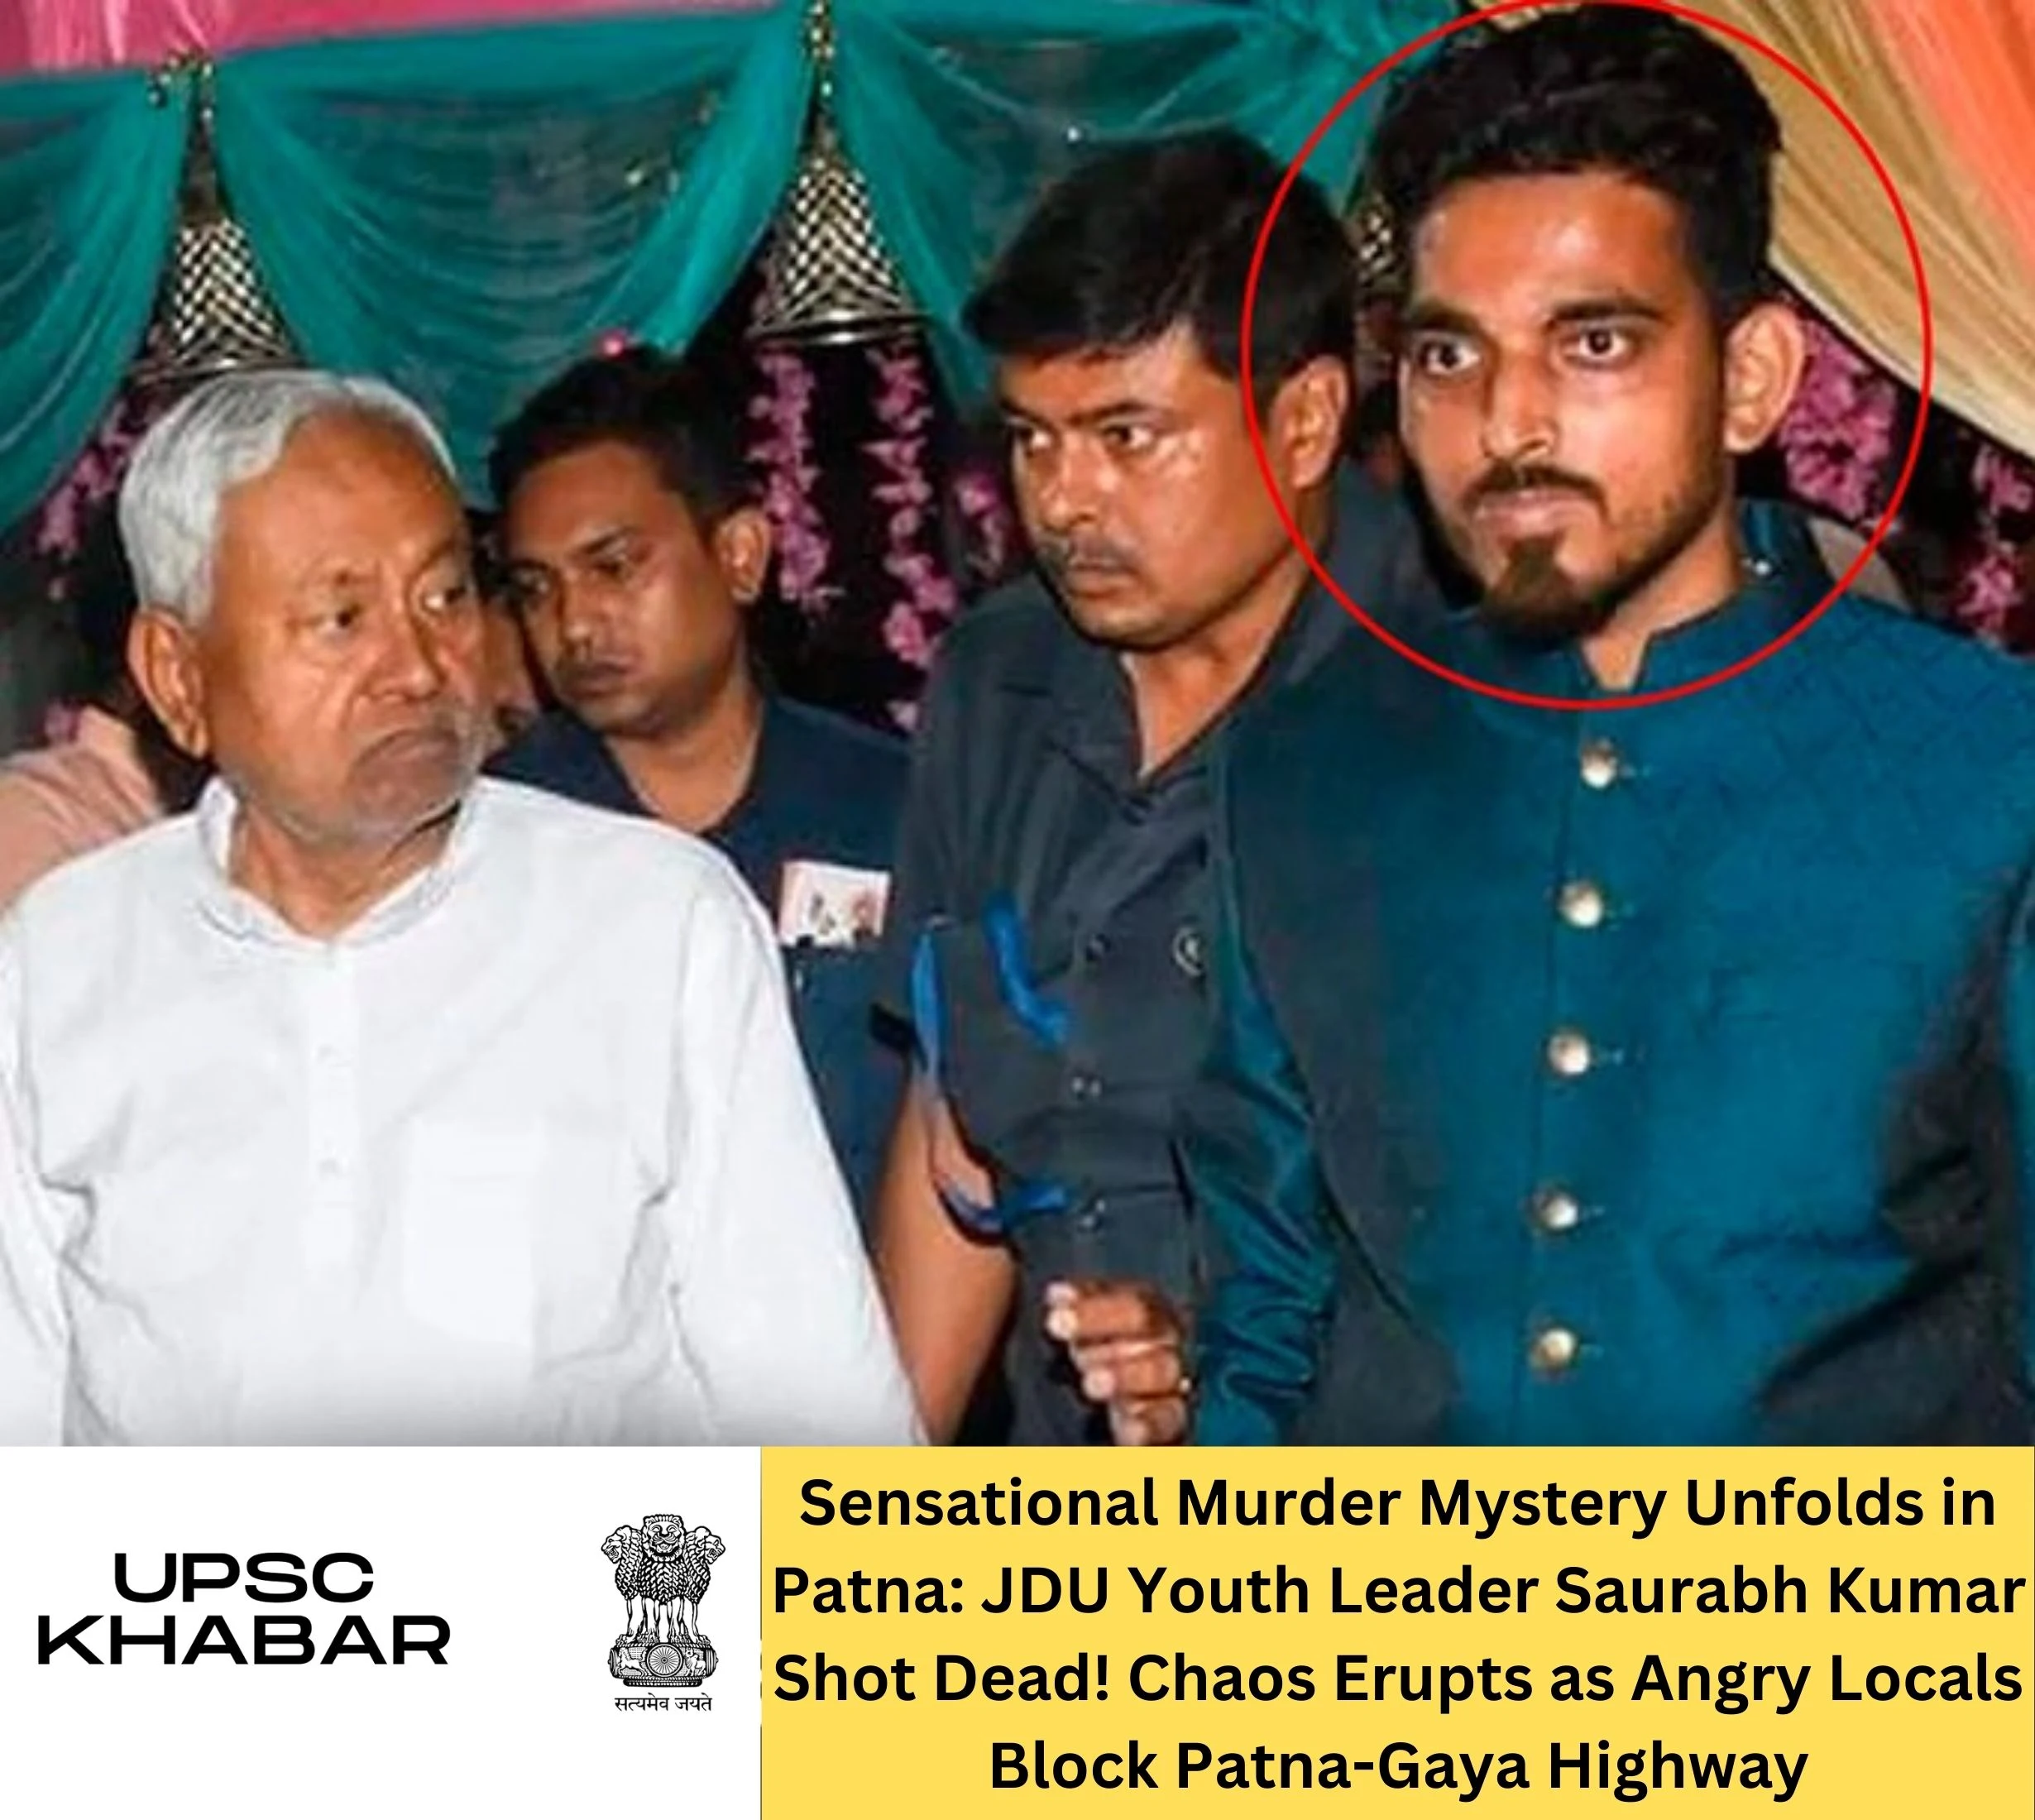 Sensational Murder Mystery Unfolds in Patna: JDU Youth Leader Saurabh Kumar Shot Dead! Chaos Erupts as Angry Locals Block Patna-Gaya Highway